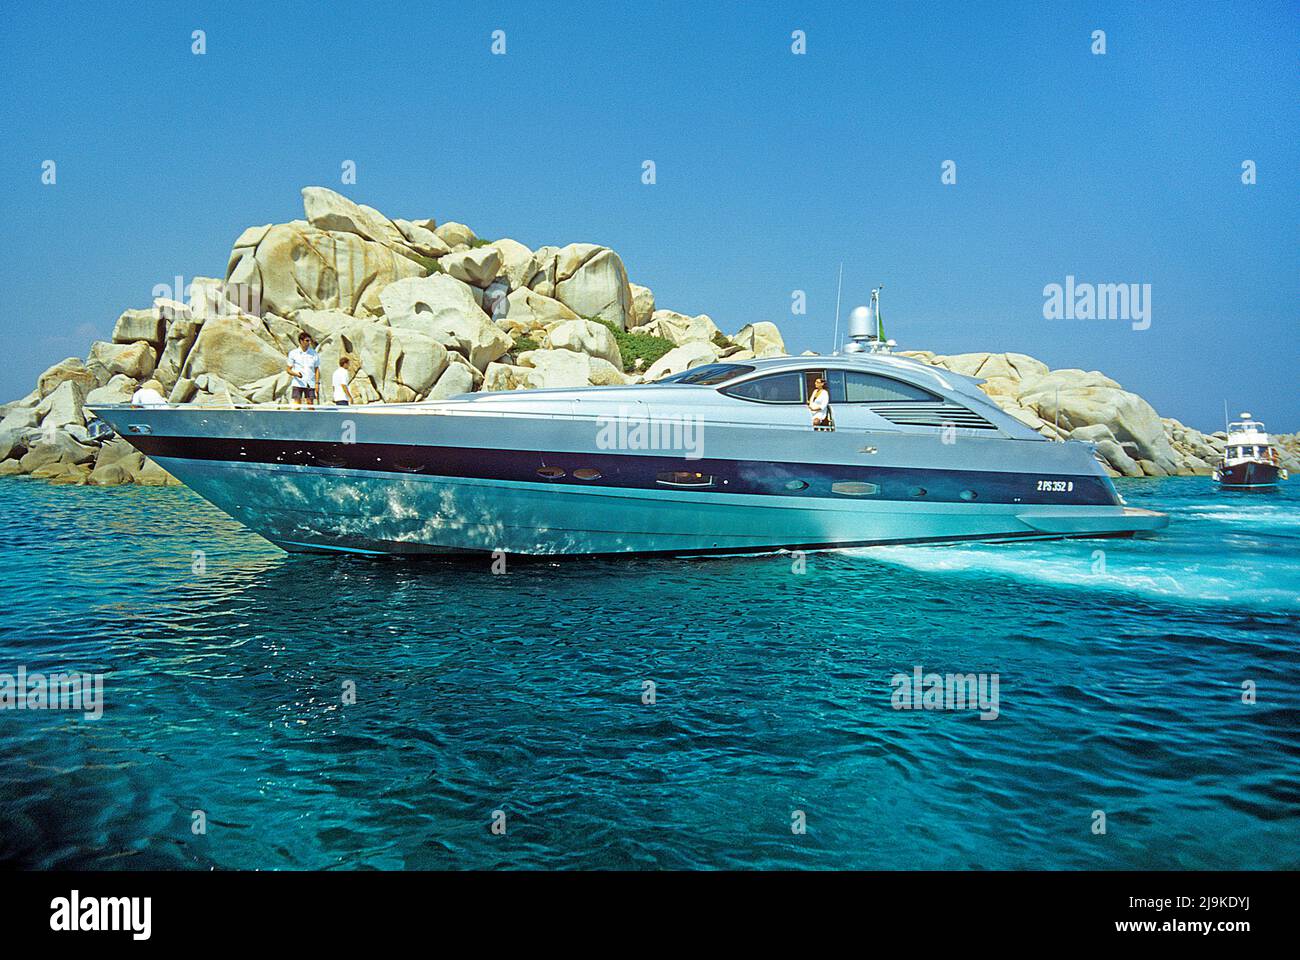 Yacht à moteur de luxe aux îles Lavezzi, groupe de petite île de granit entre la Corse et la Sardaigne, la Corse, la France, la Méditerranée, l'Europe Banque D'Images